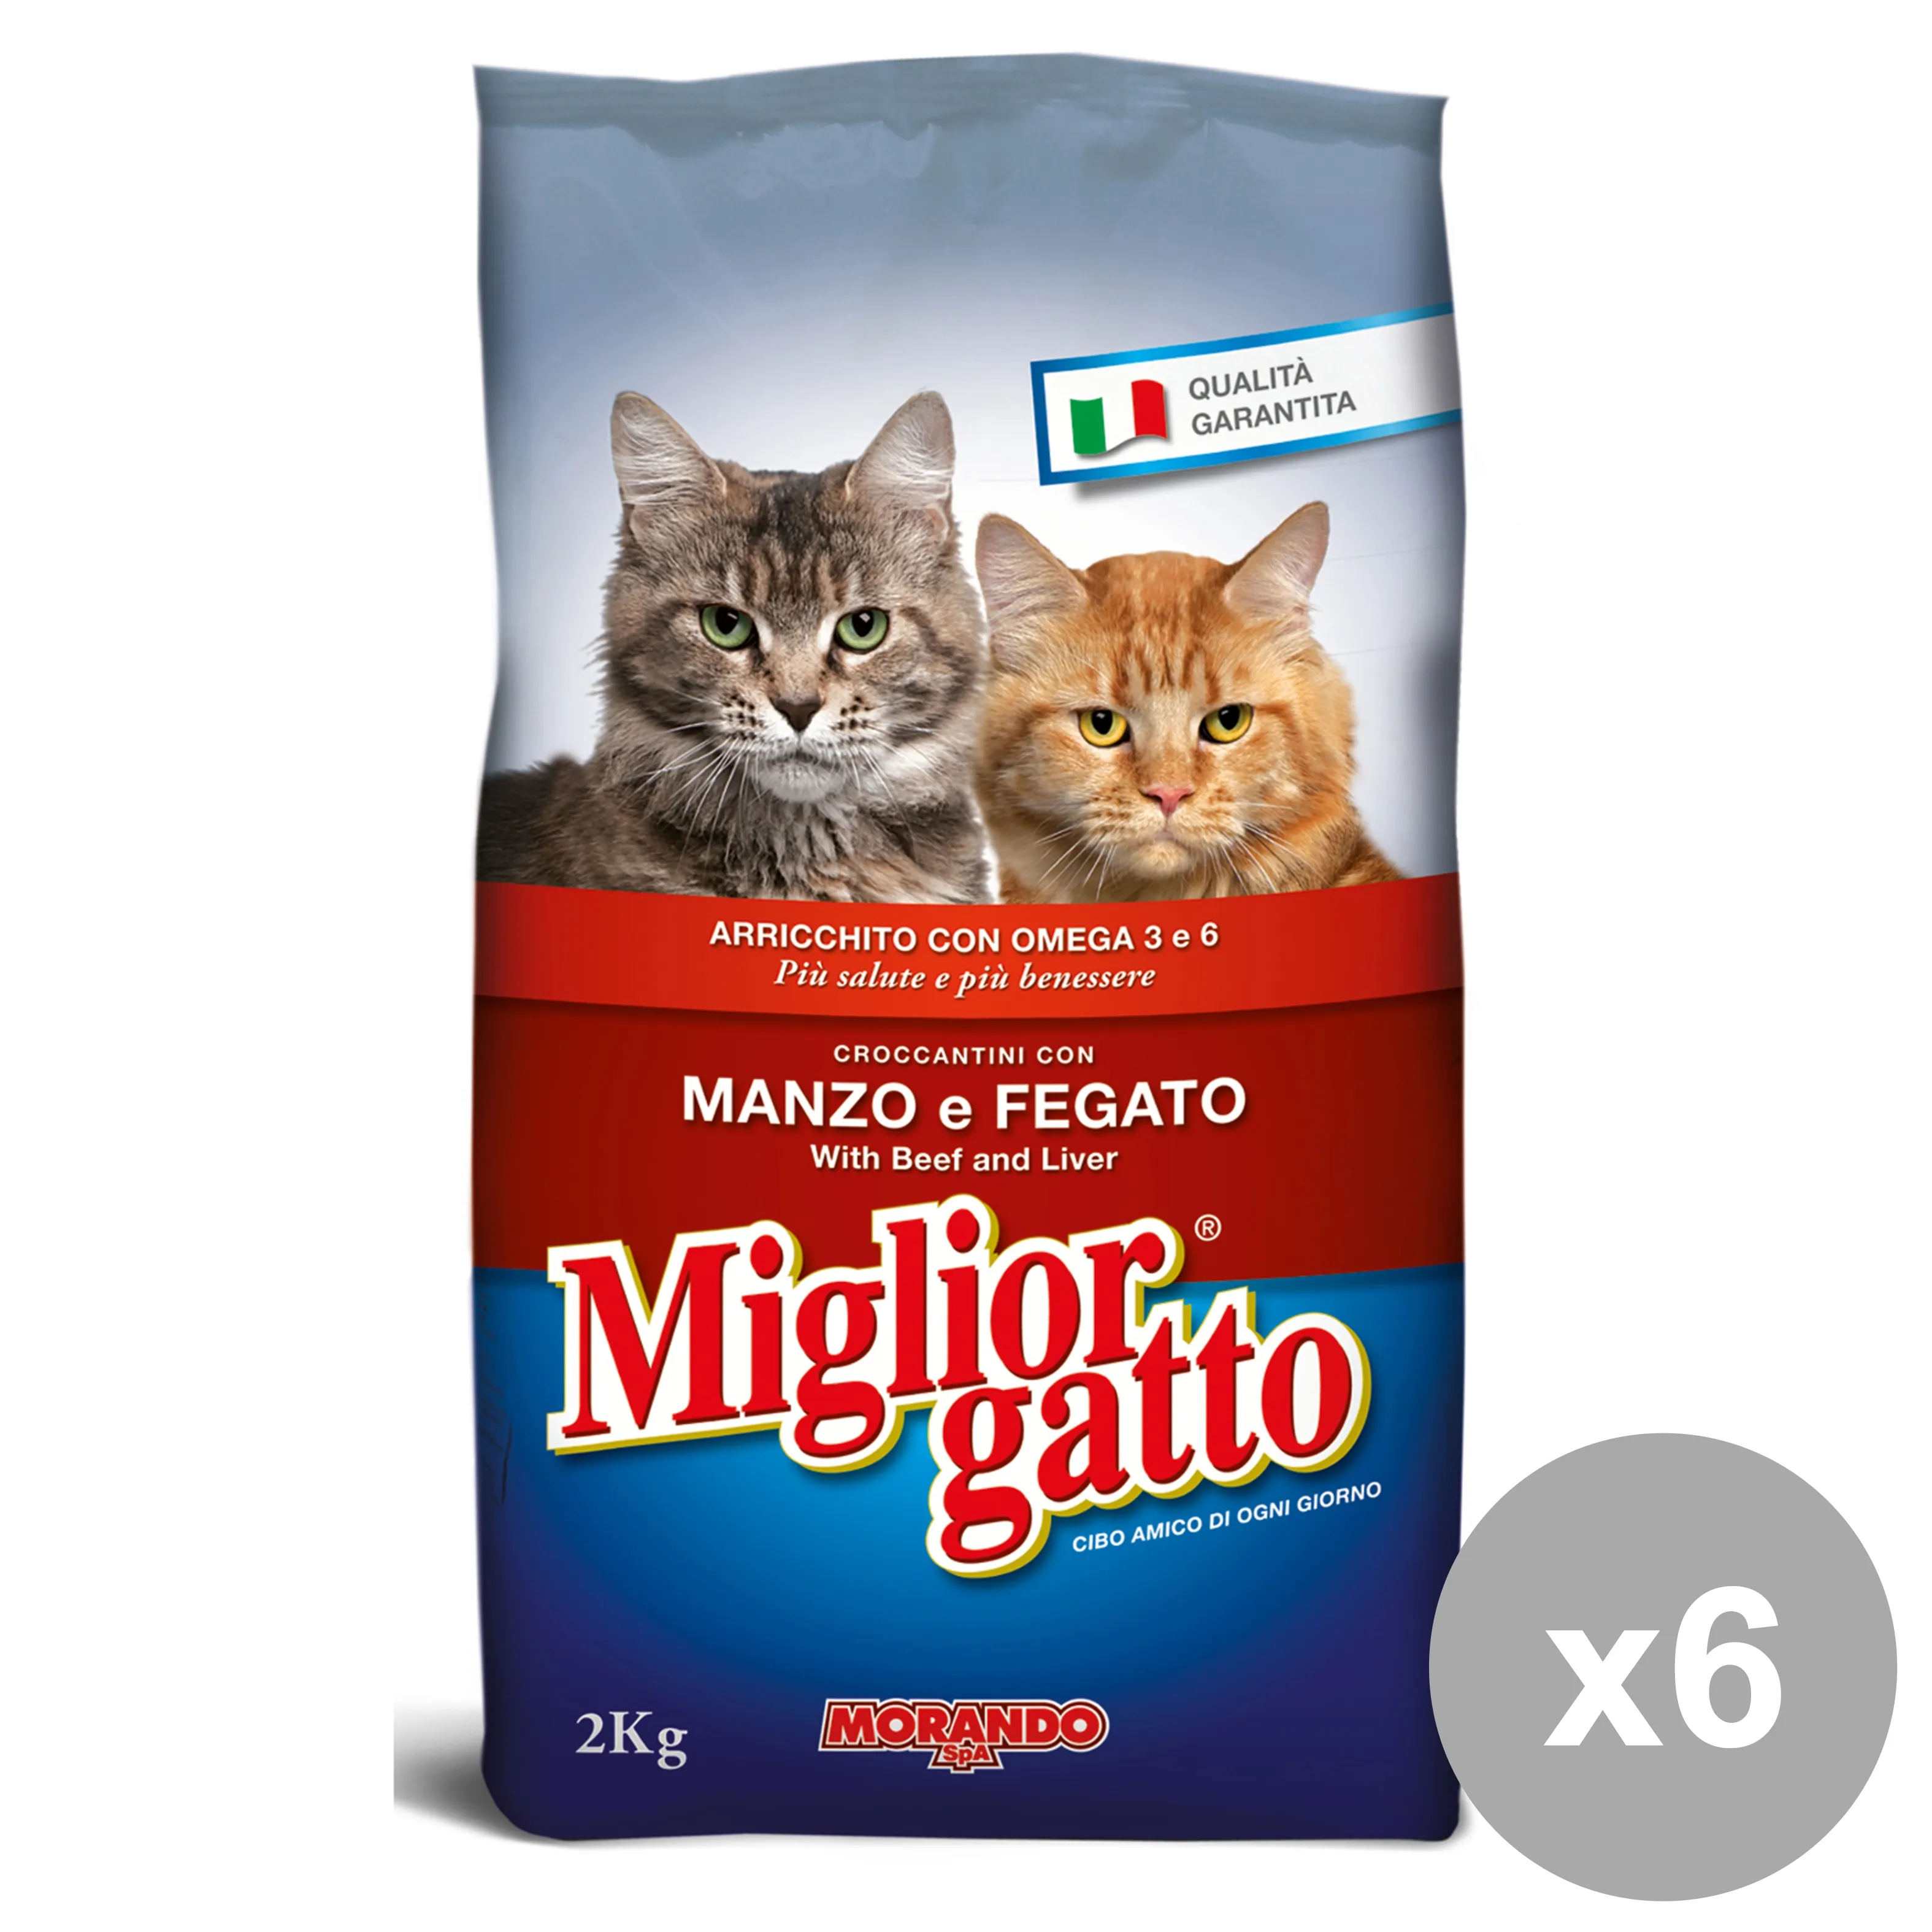 "MIGLIOR GATTO Set 6 2 Kg.Secco Manzo-Fegato Cibo Per Gatti"